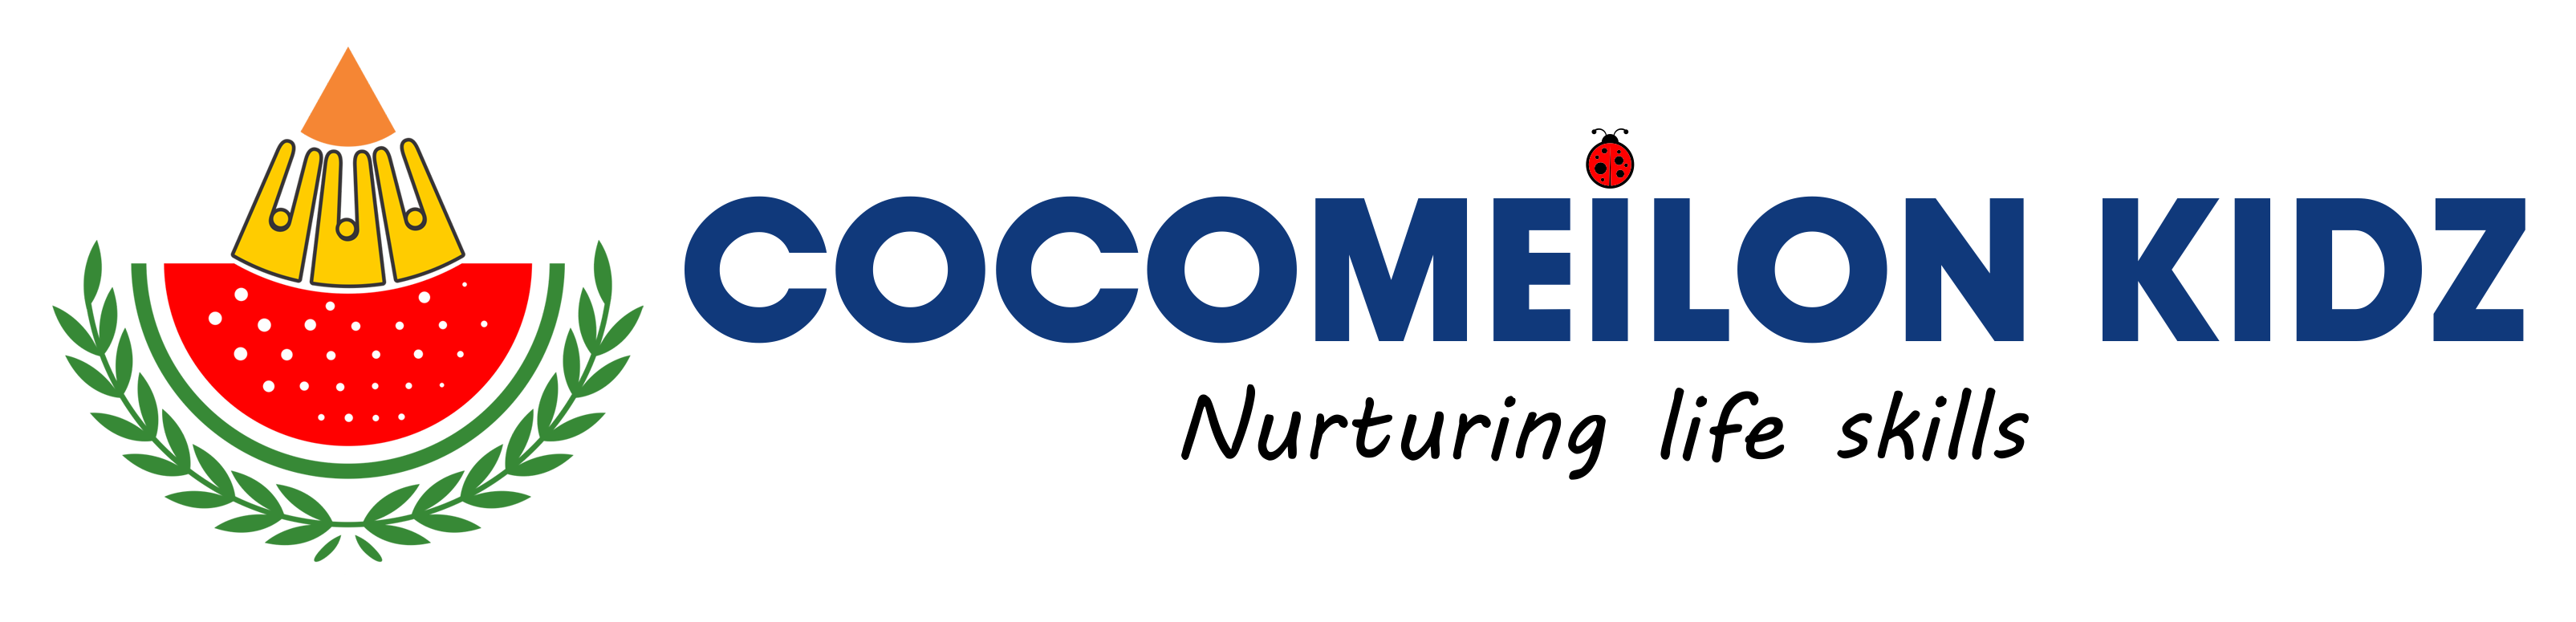 COCOMEILON KIDZ logo